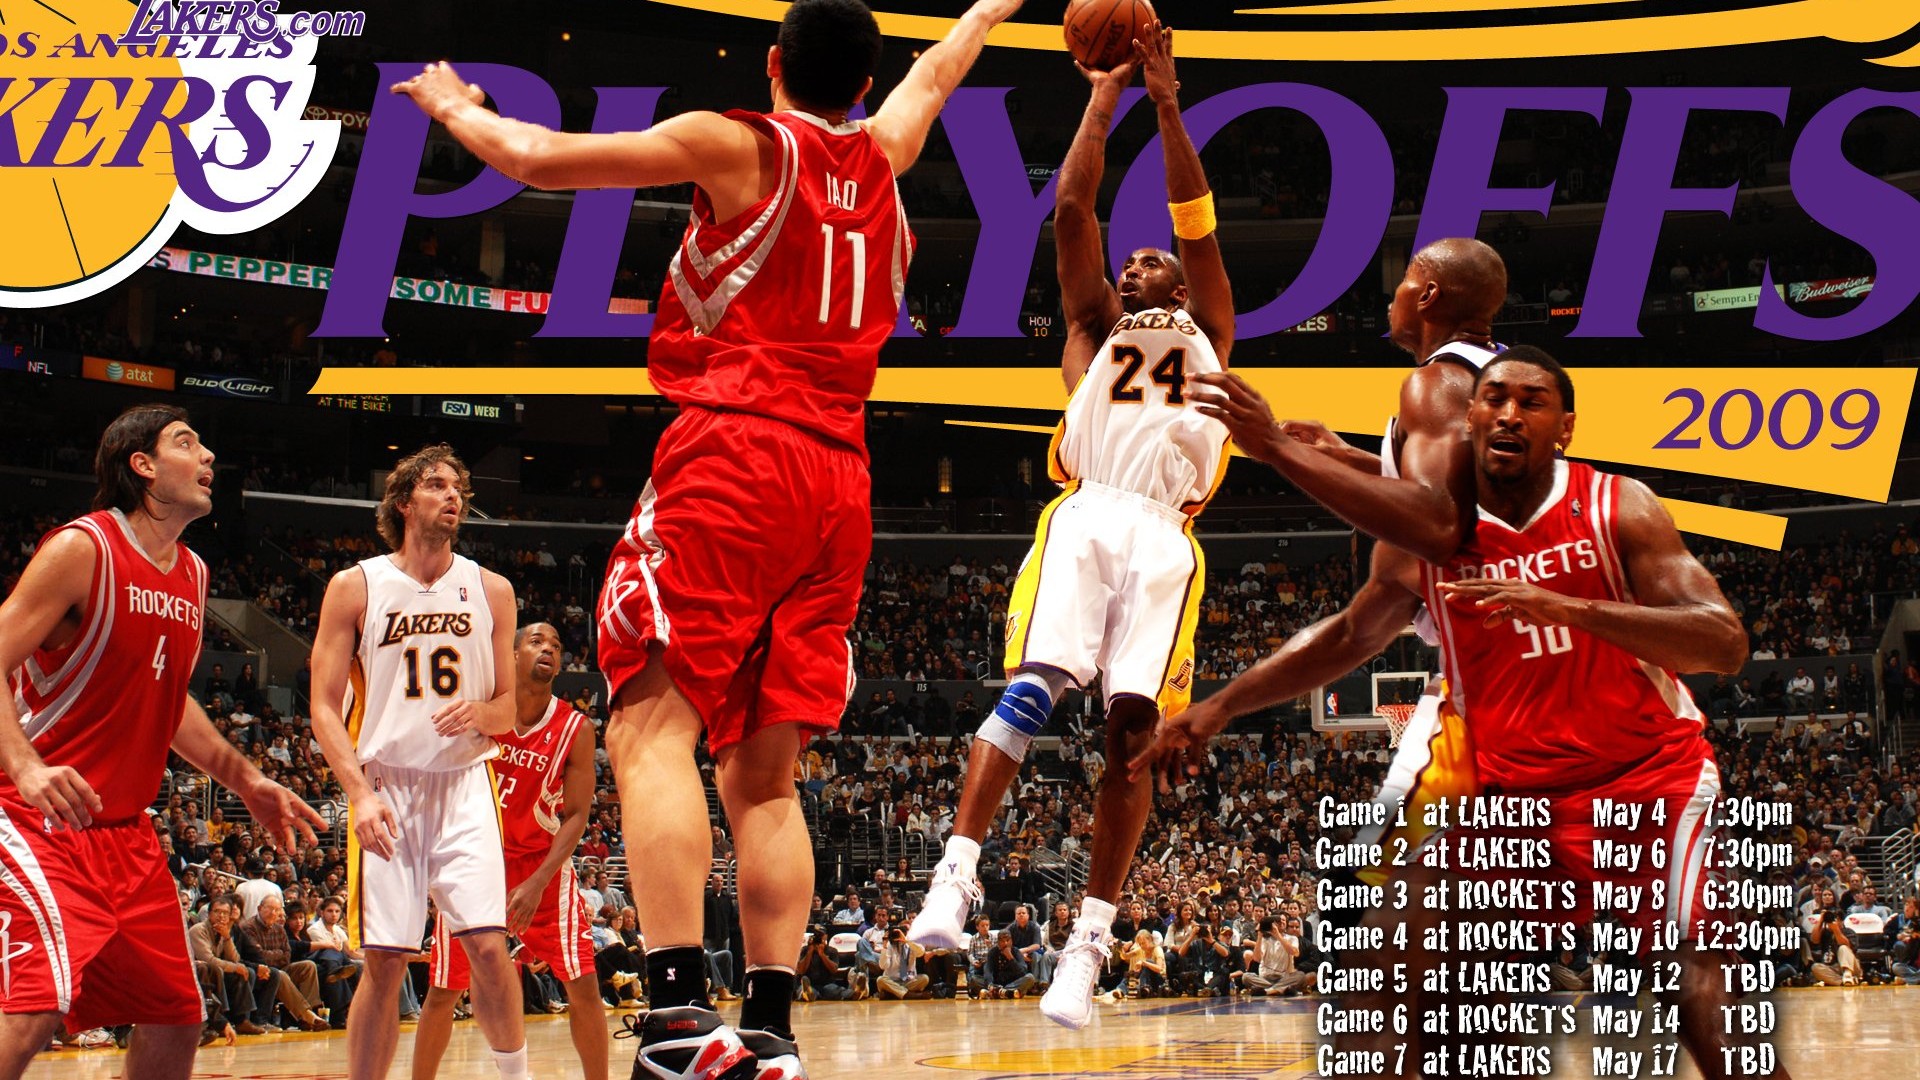 NBA2009 Champion Wallpaper Lakers #9 - 1920x1080